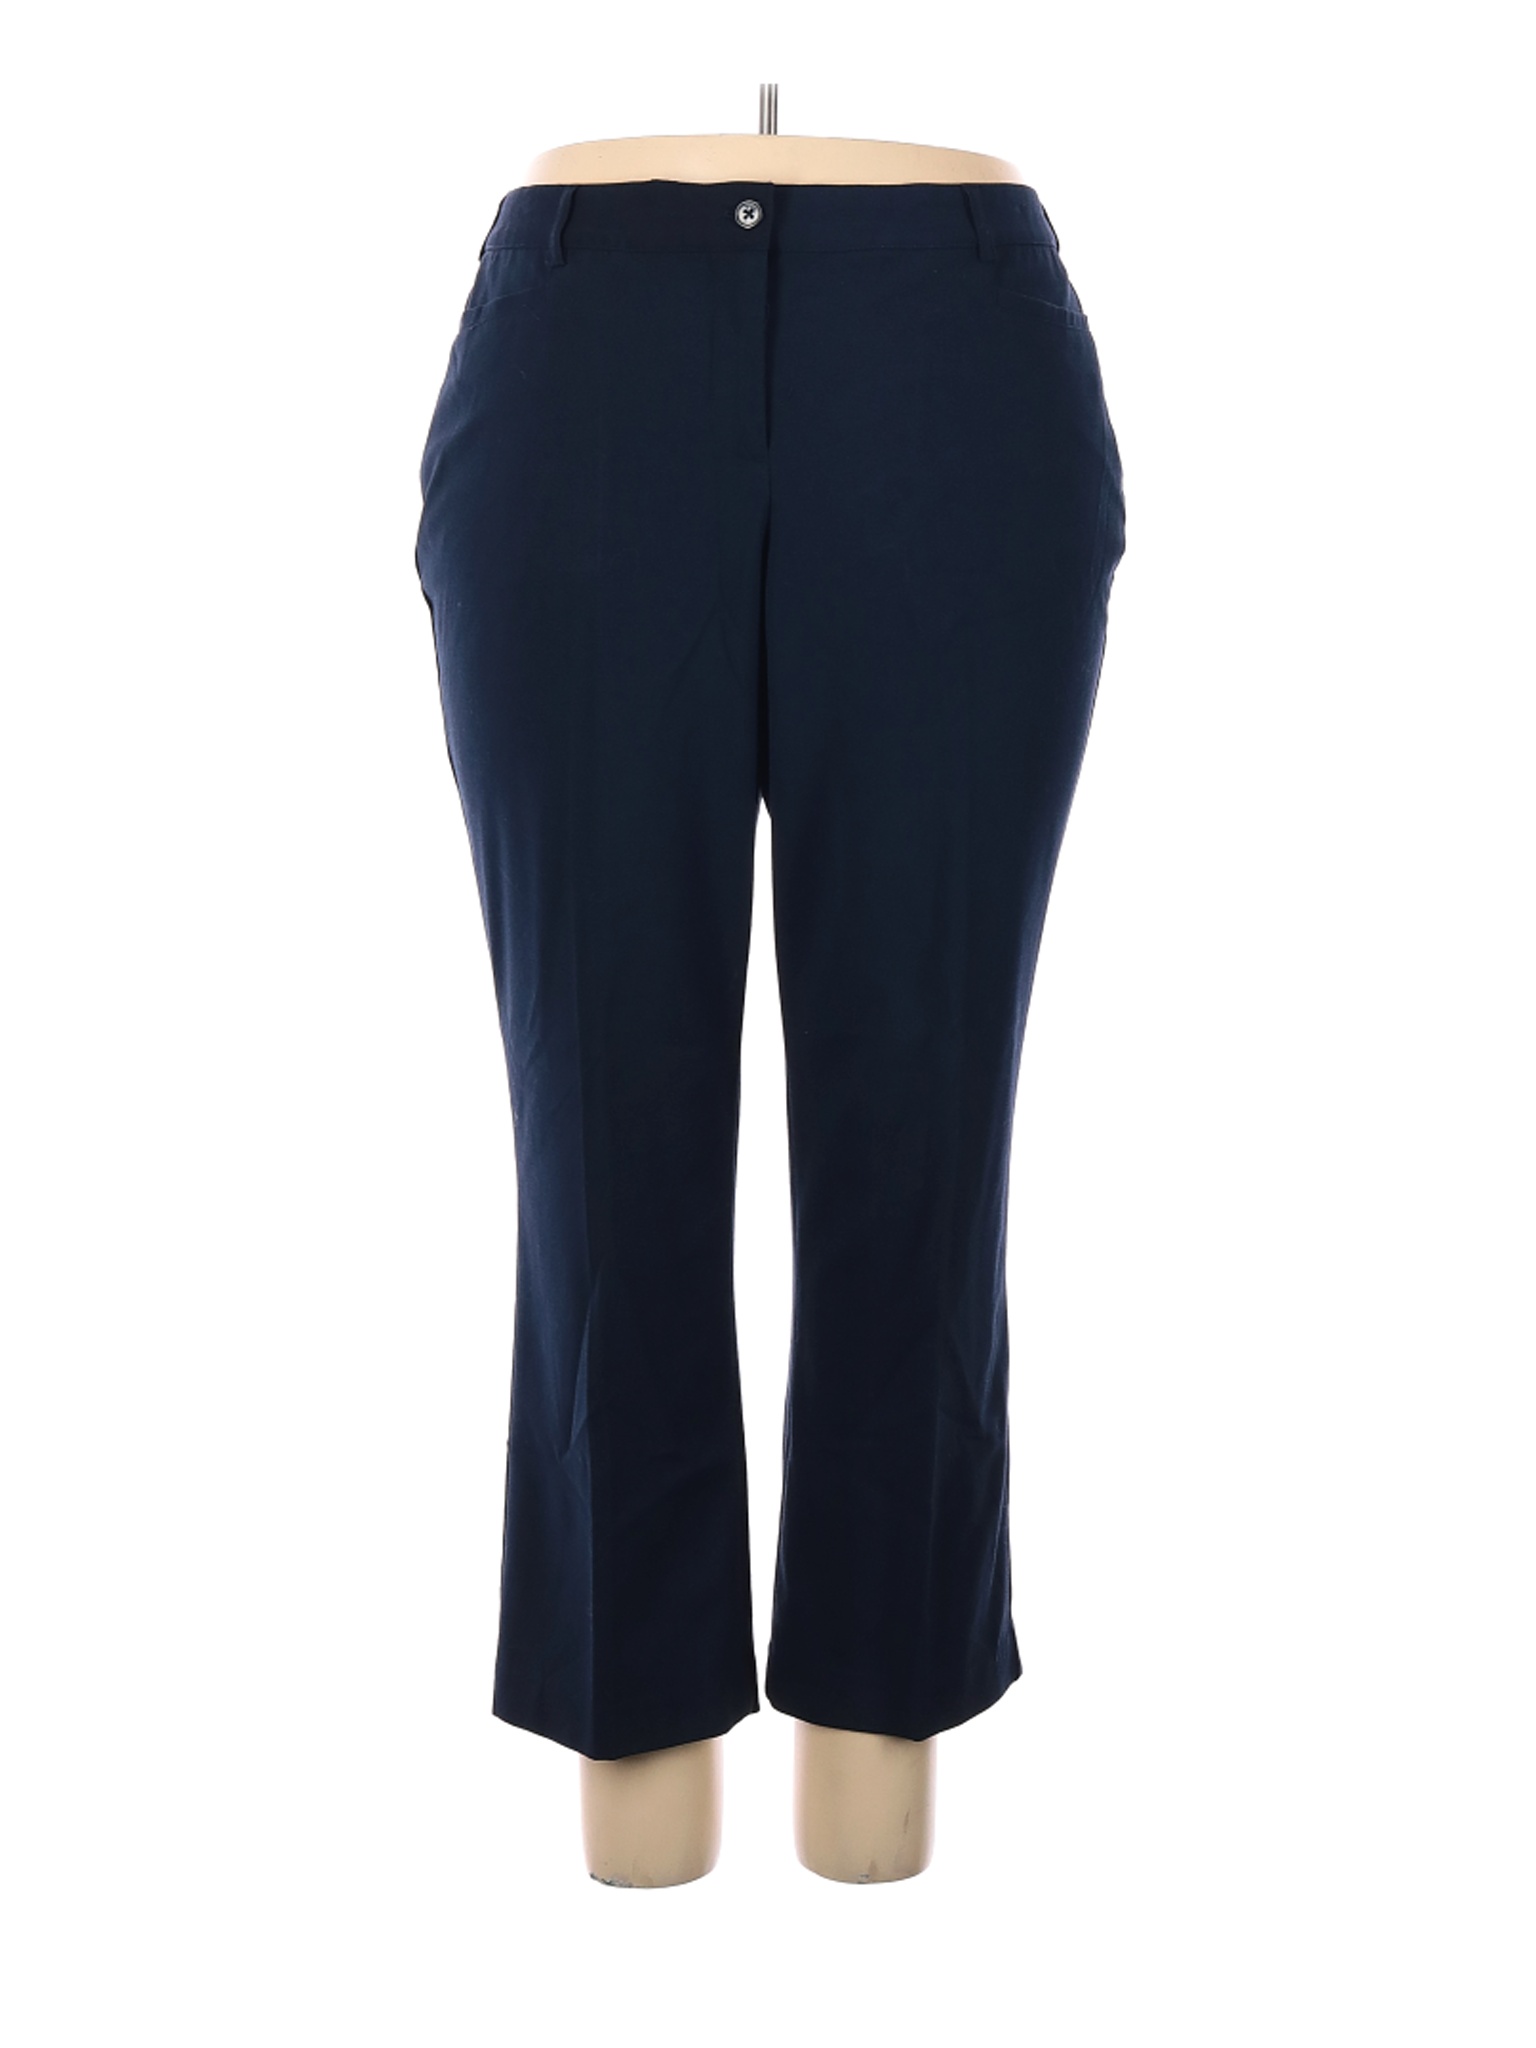 Lane Bryant Women Blue Dress Pants 18 Plus | eBay